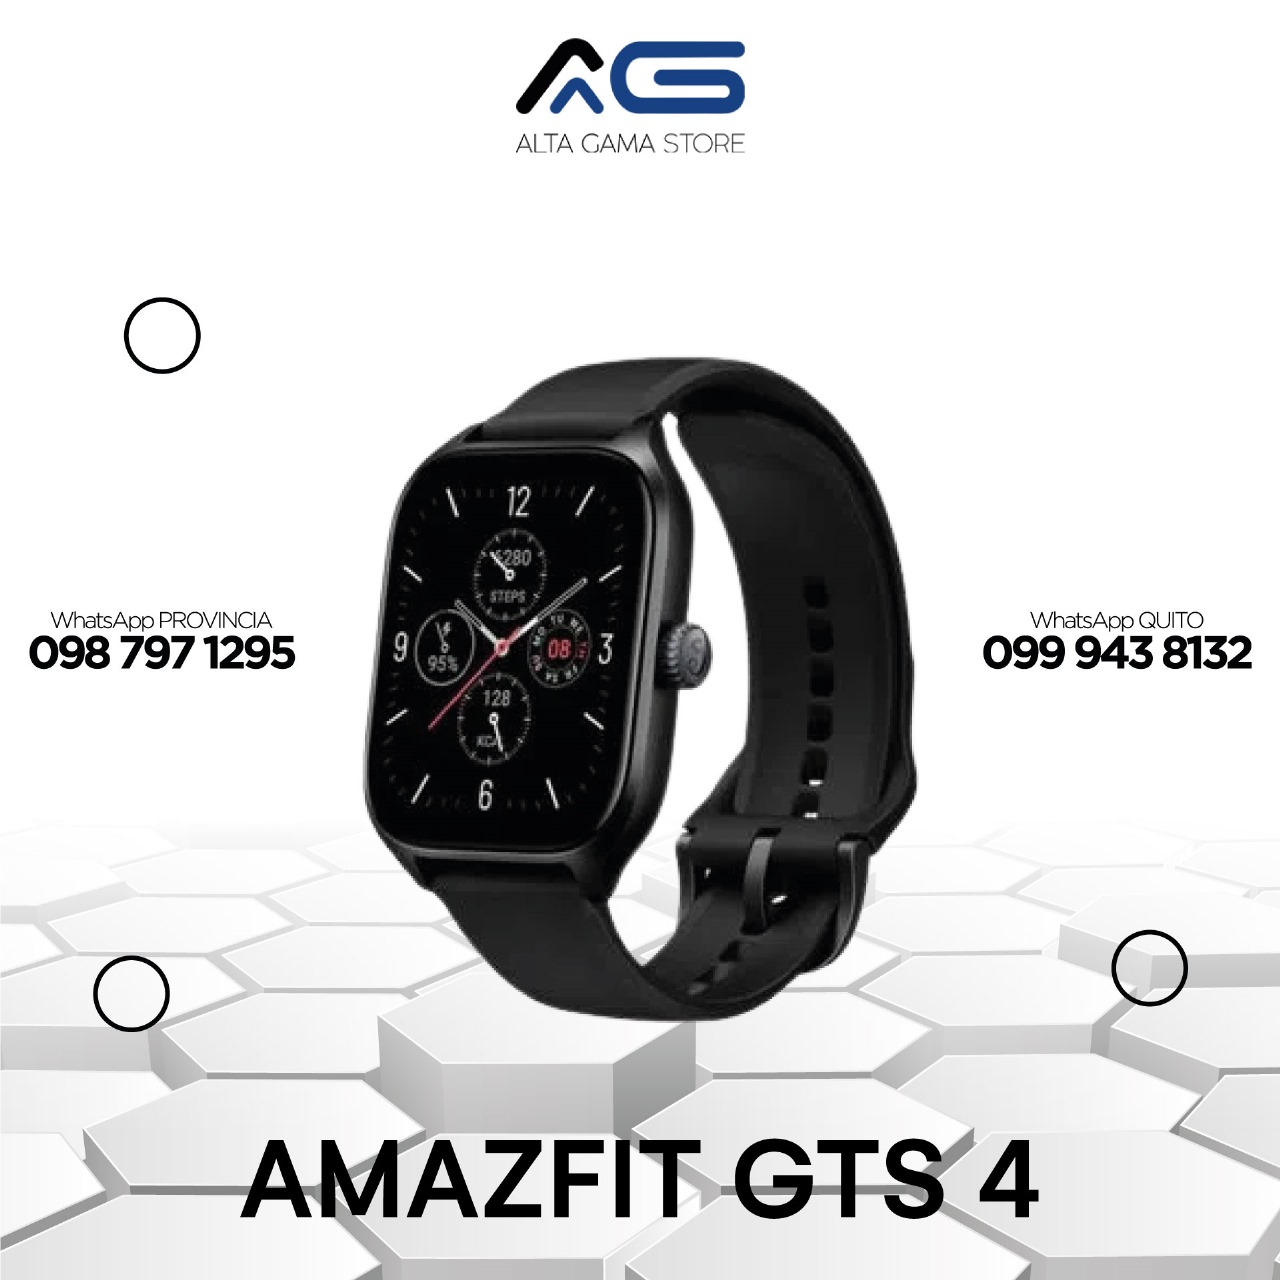 Amazfit GTS 4 – Alta gama